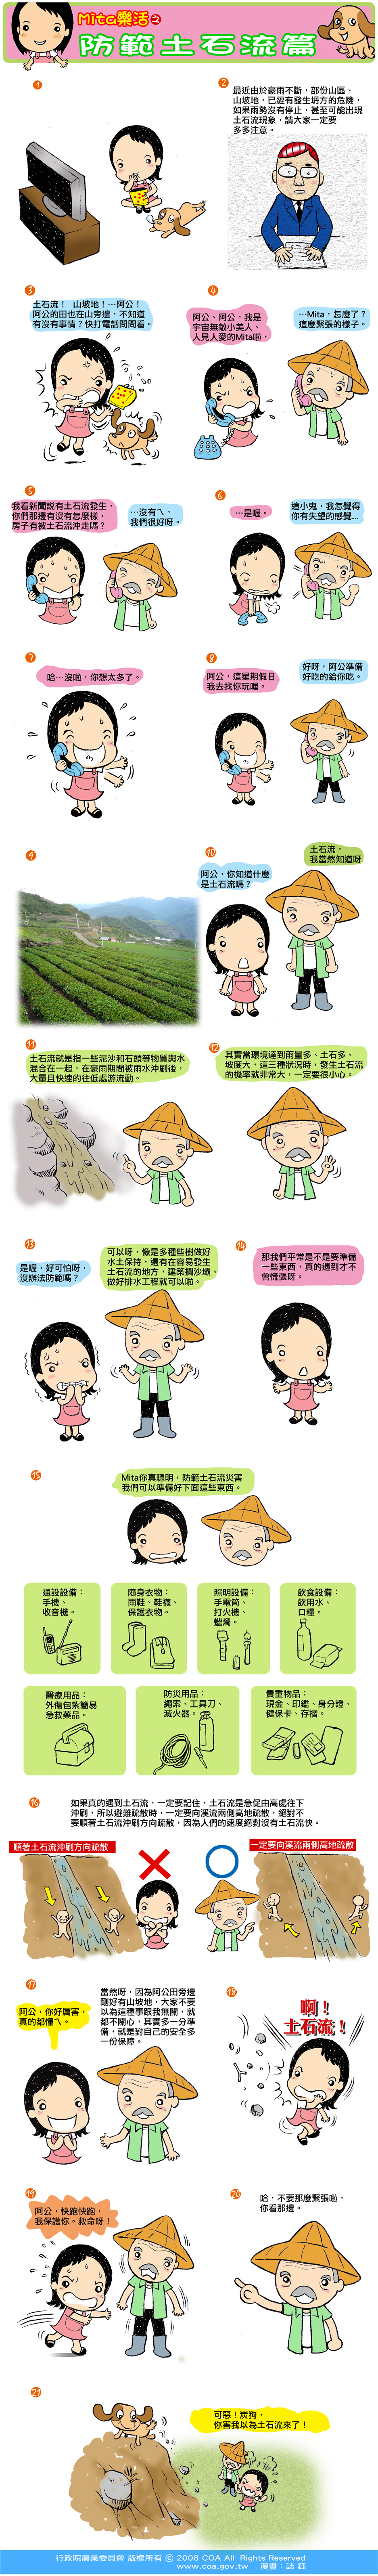 這是一篇關於Mita樂活之防範土石流篇主題的漫畫，詳細內容可參考下方詳細說明